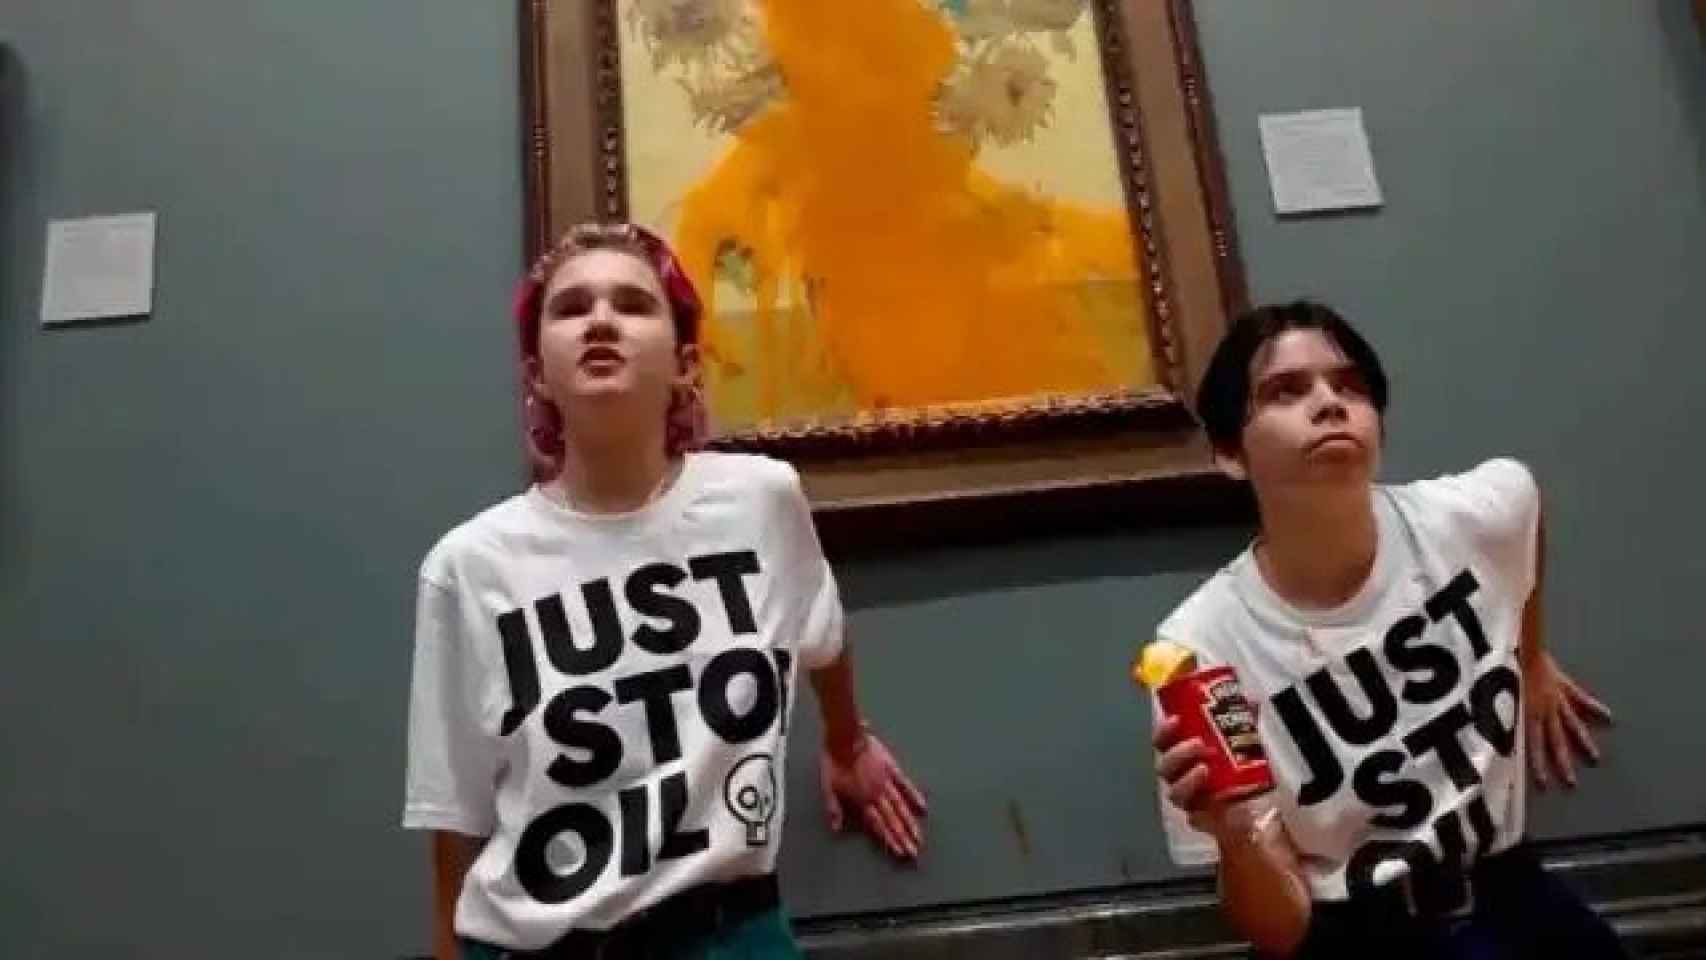 Las activistas de Just Stop Oil en el ataque con sopa de tomate a Los girasoles de Van Gogh.